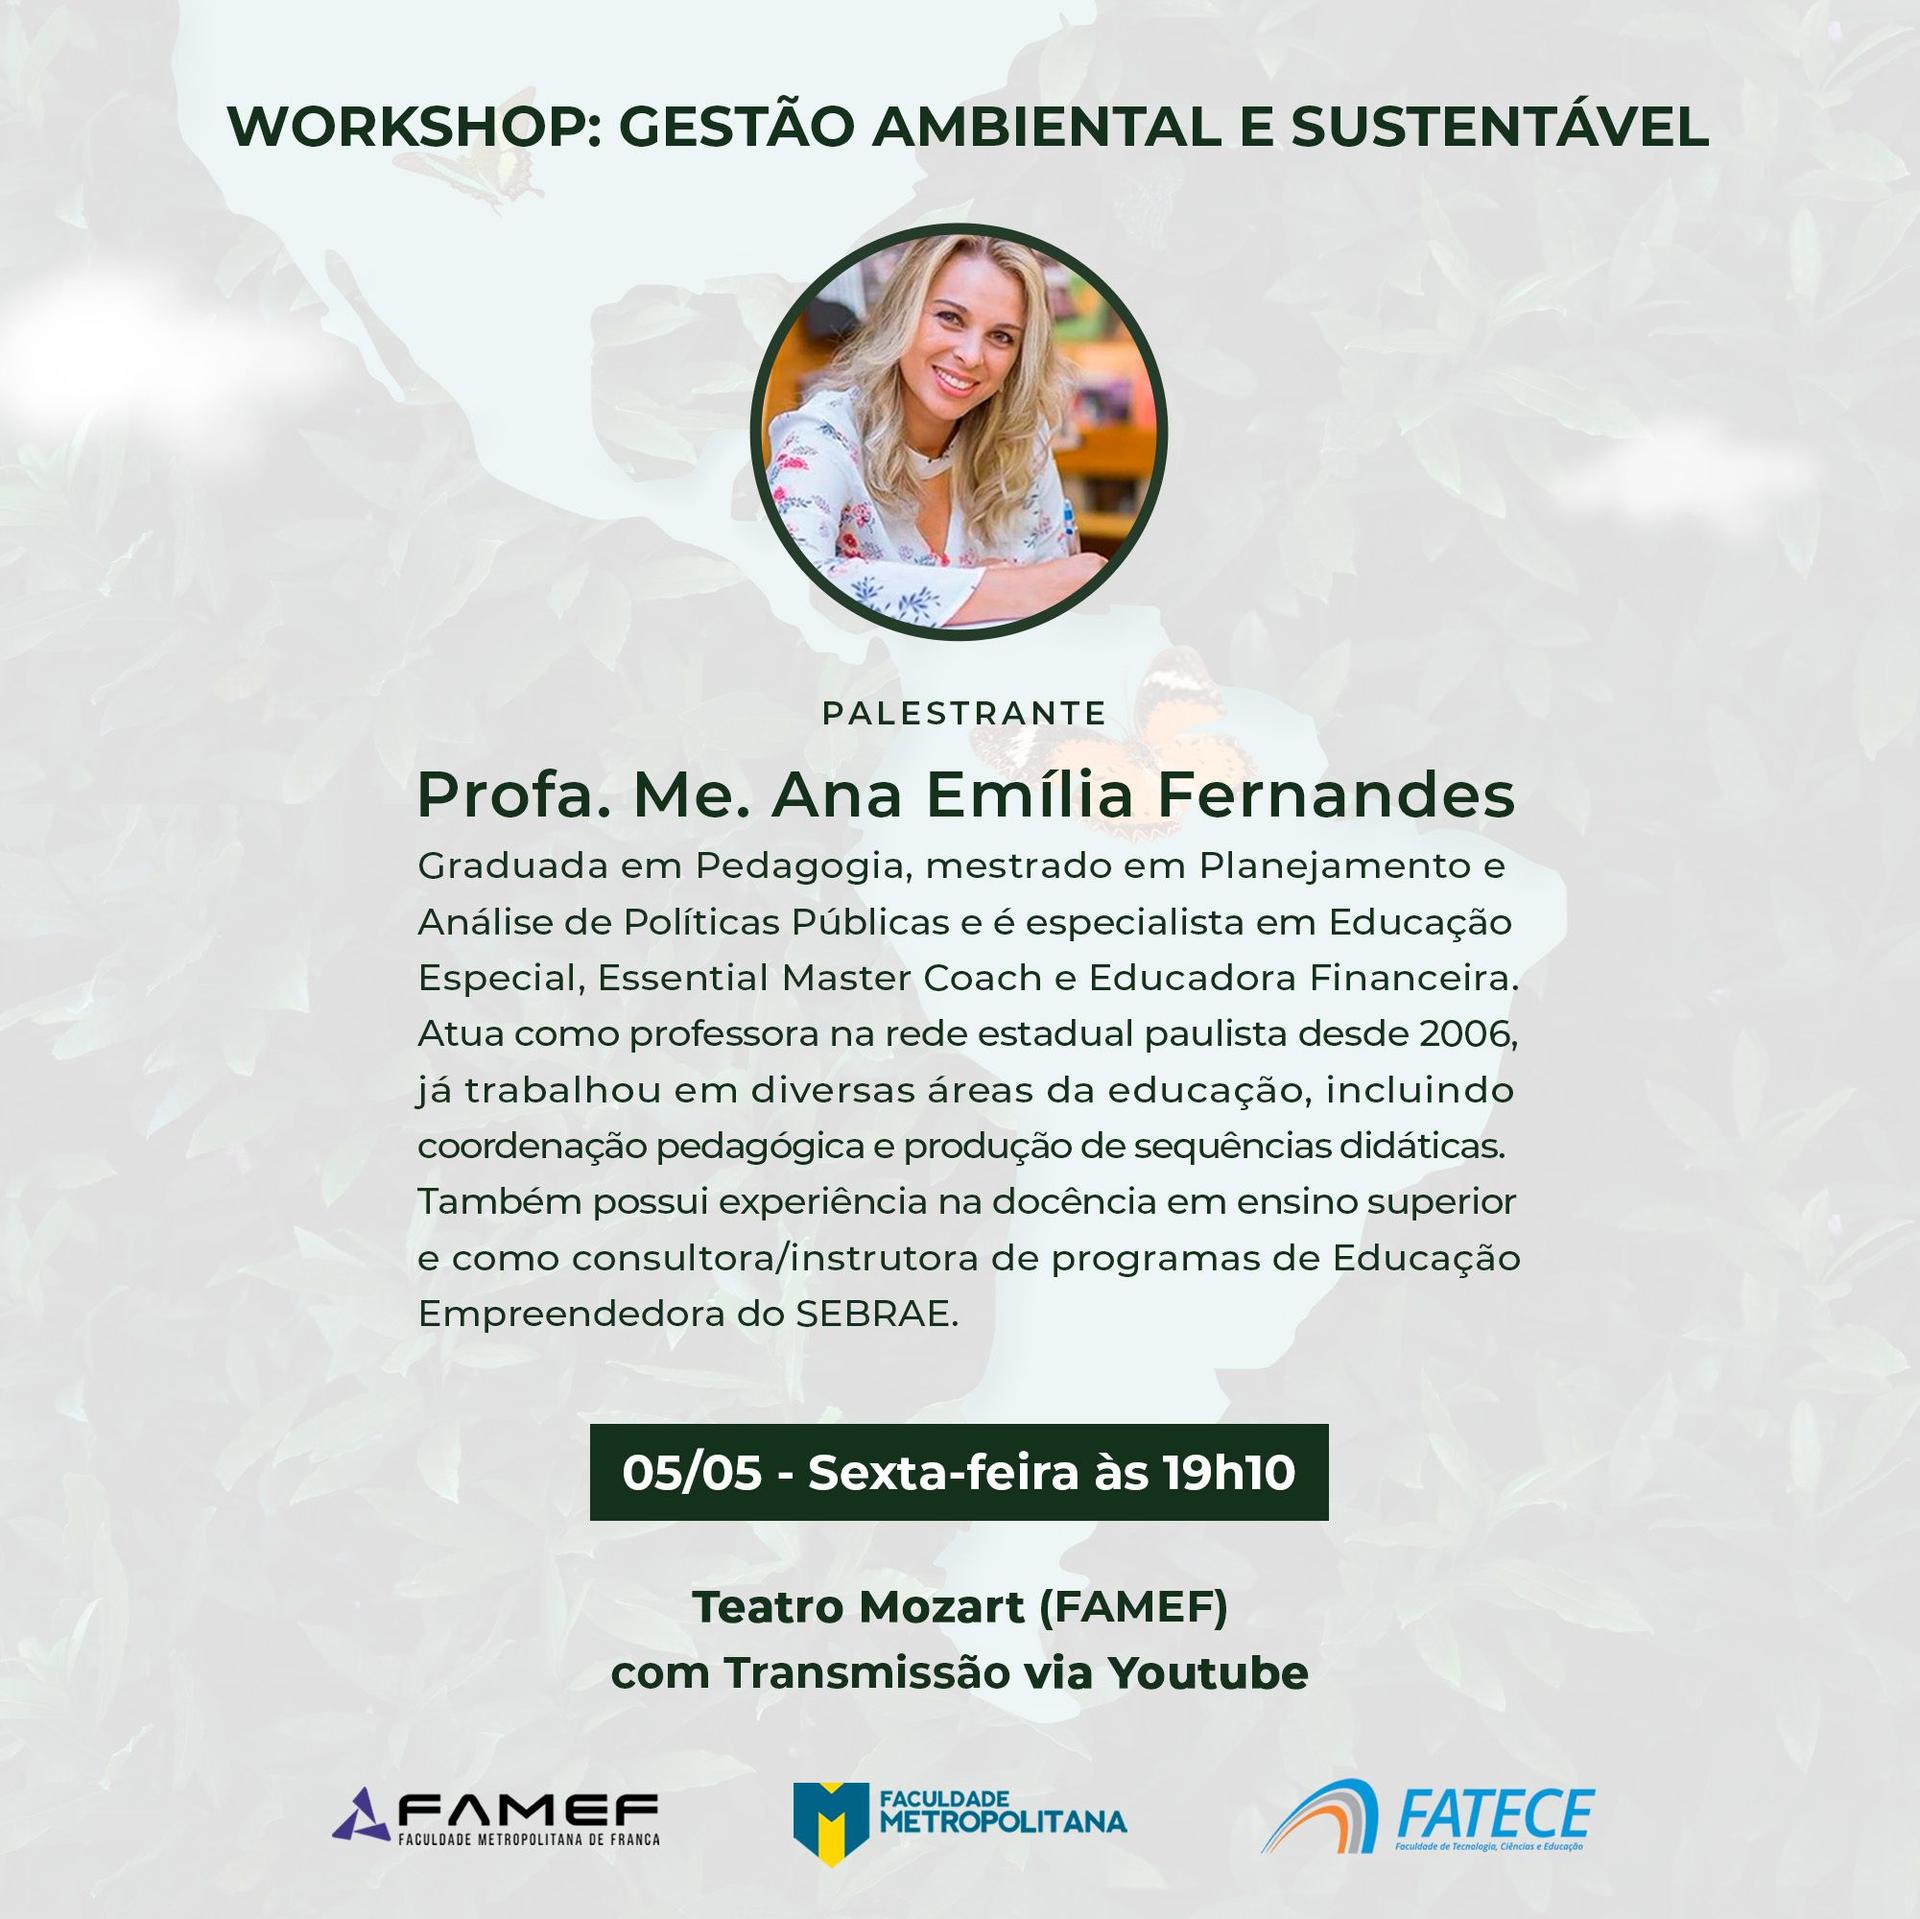 Workshop: Gestão Ambiental e Sustentável